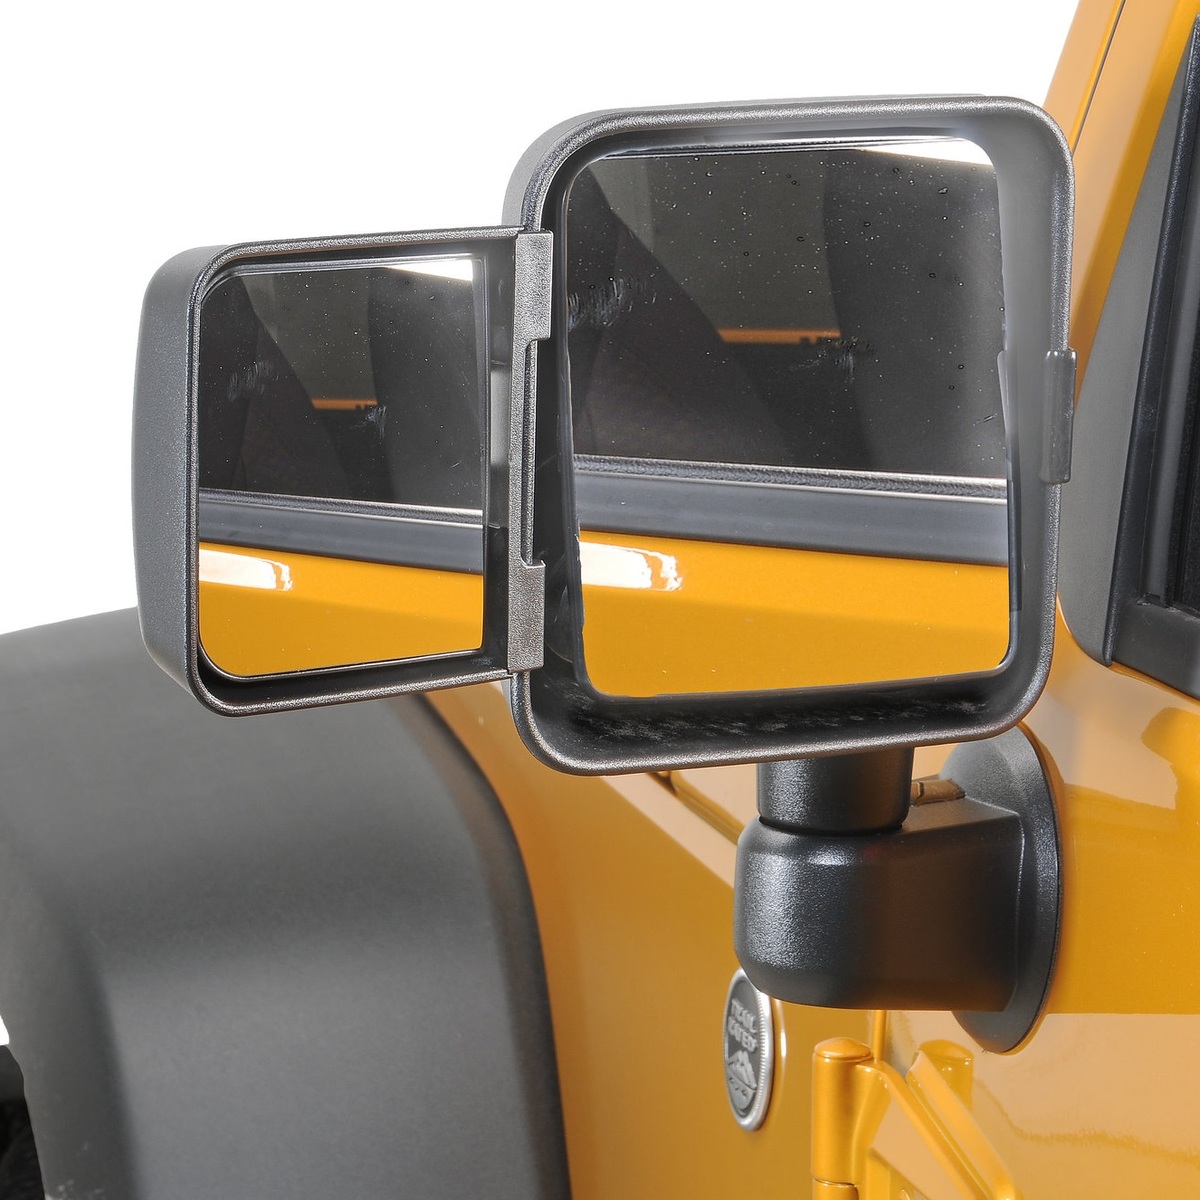 Car Styling Accessori AKKNE 2Pcs Auto ABS Cromato Copri Specchietti Retrovisori per Jeep Wrangler 2007-2017 Door Side Rear View Mirrors Wing Calotte Protector Trim cap 